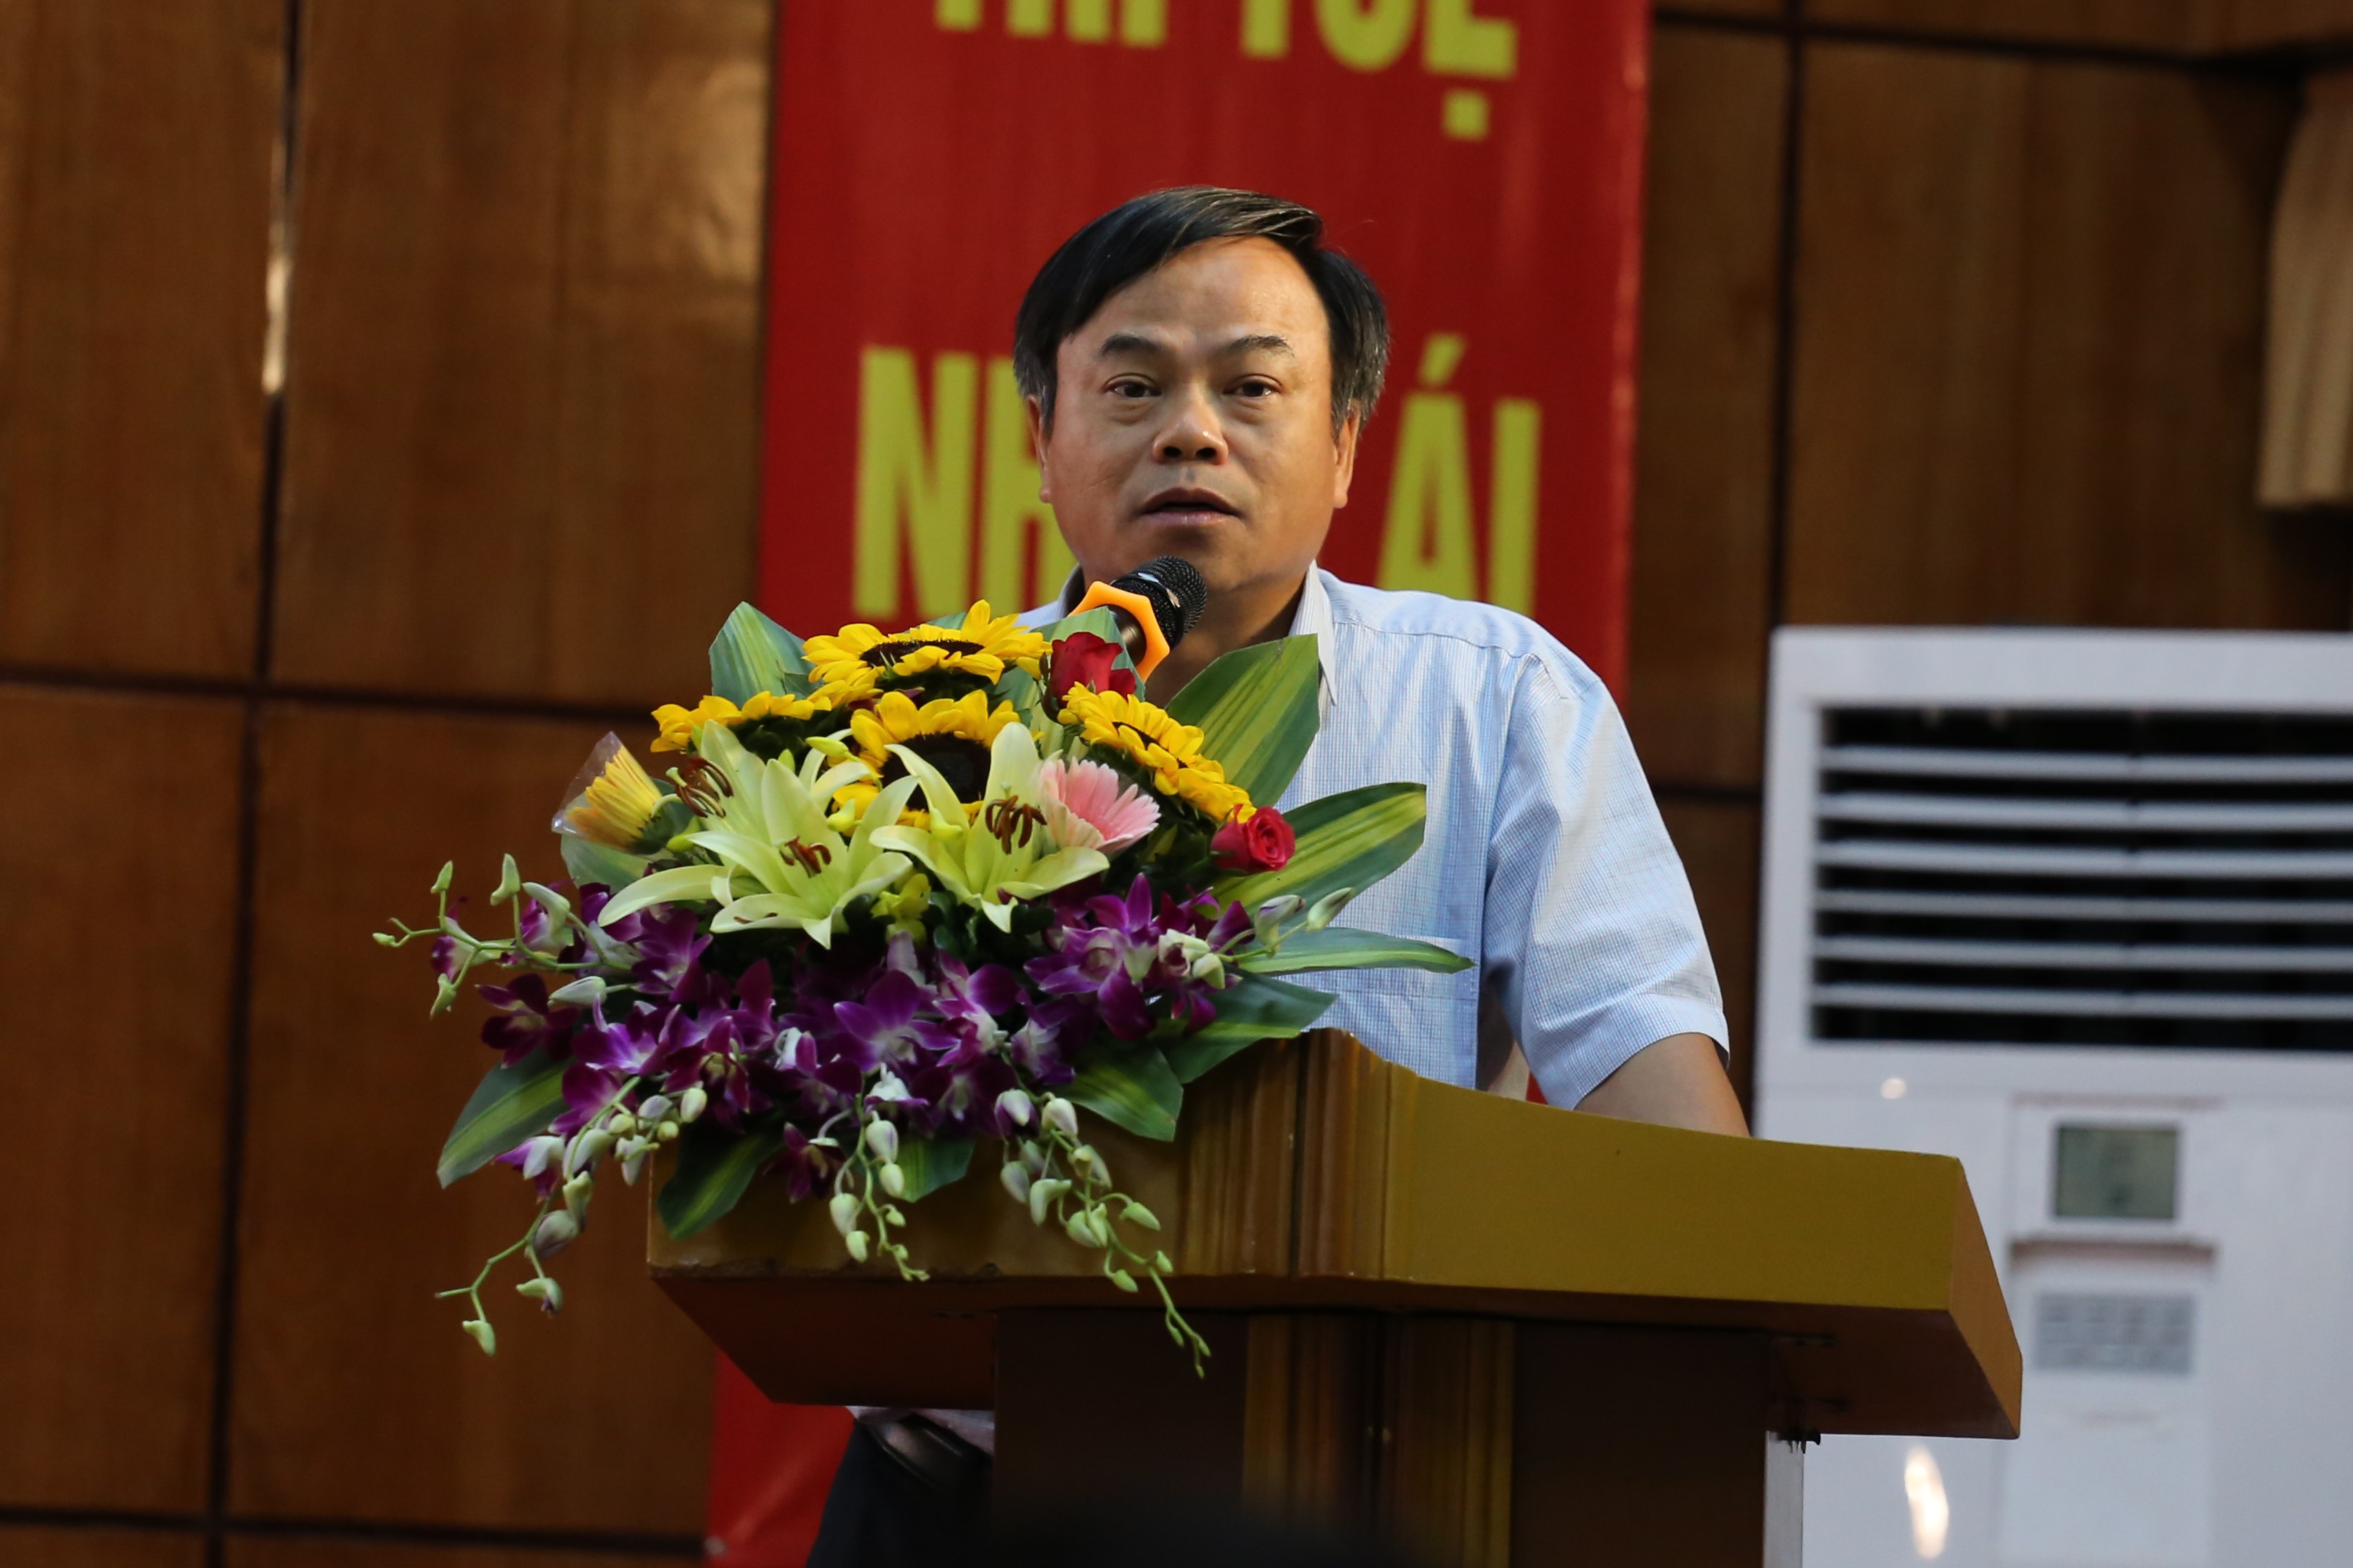  Đồng chí Trần Văn Vinh, Bí thư Đảng ủy Tổng cục, Tổng cục Trưởng Tổng cục TCĐLCL